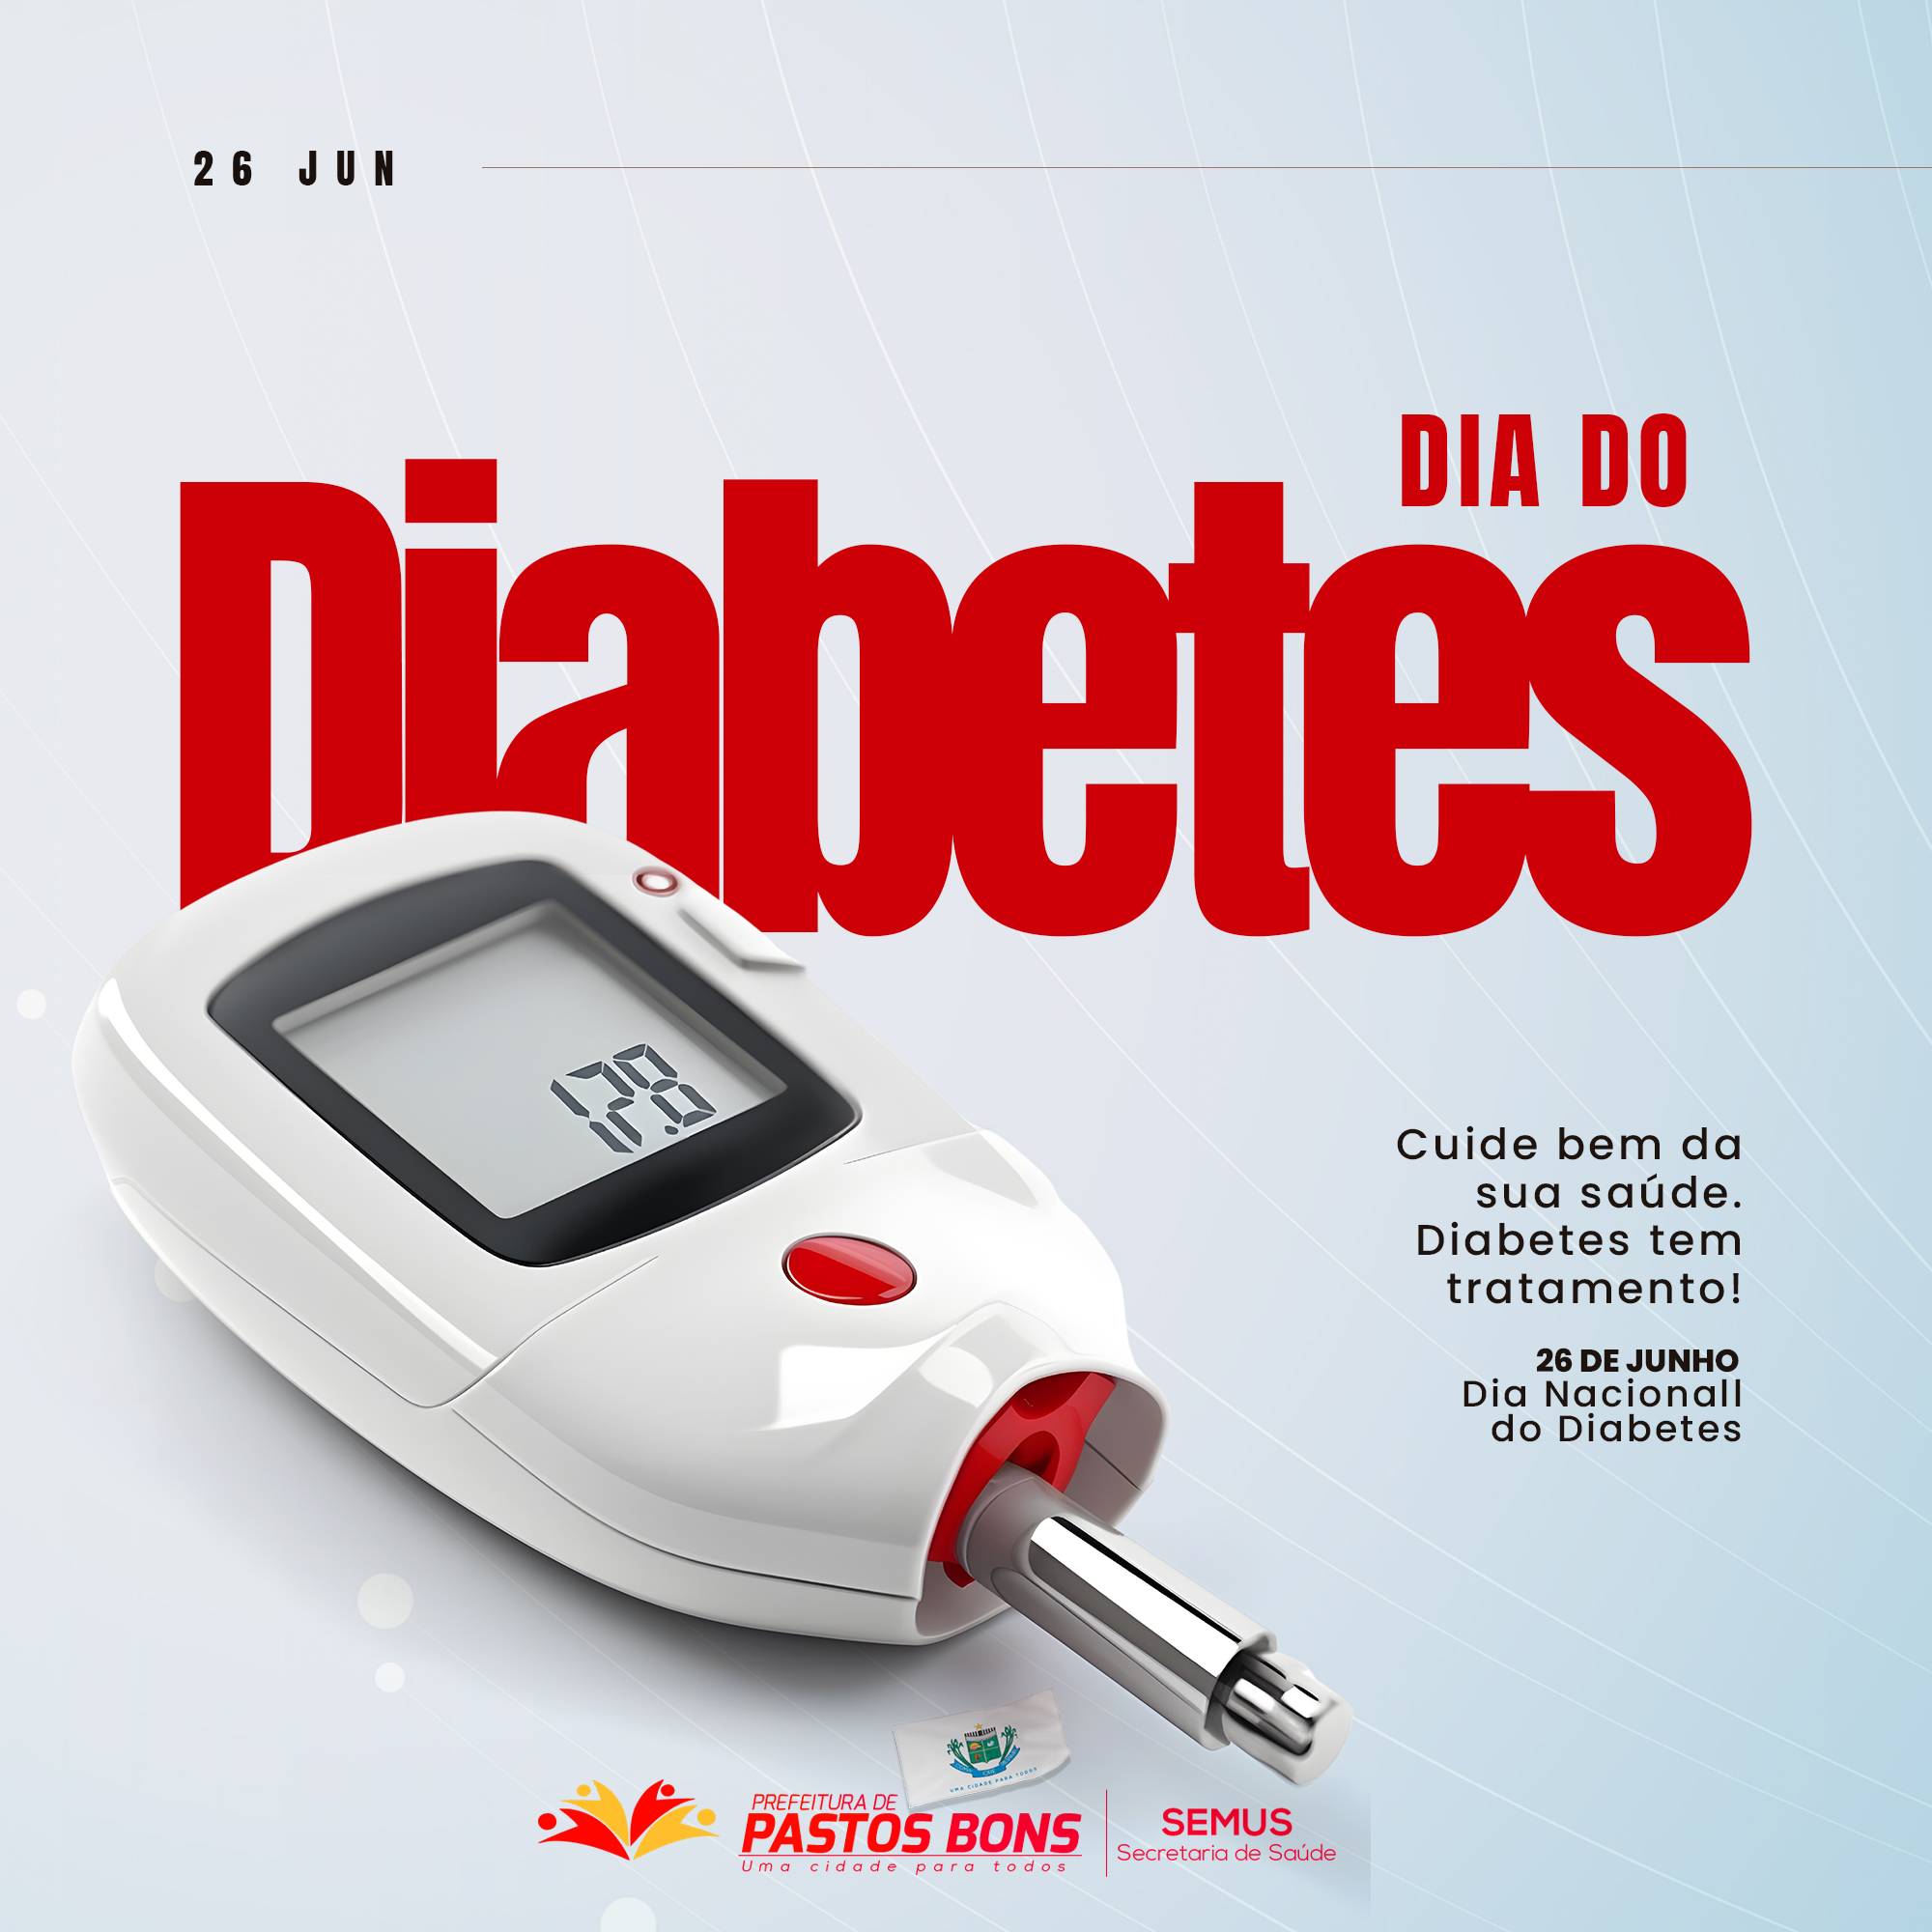 Hoje é o dia de conscientização sobre a diabetes, uma doença que afeta milhões de pessoas em nosso país